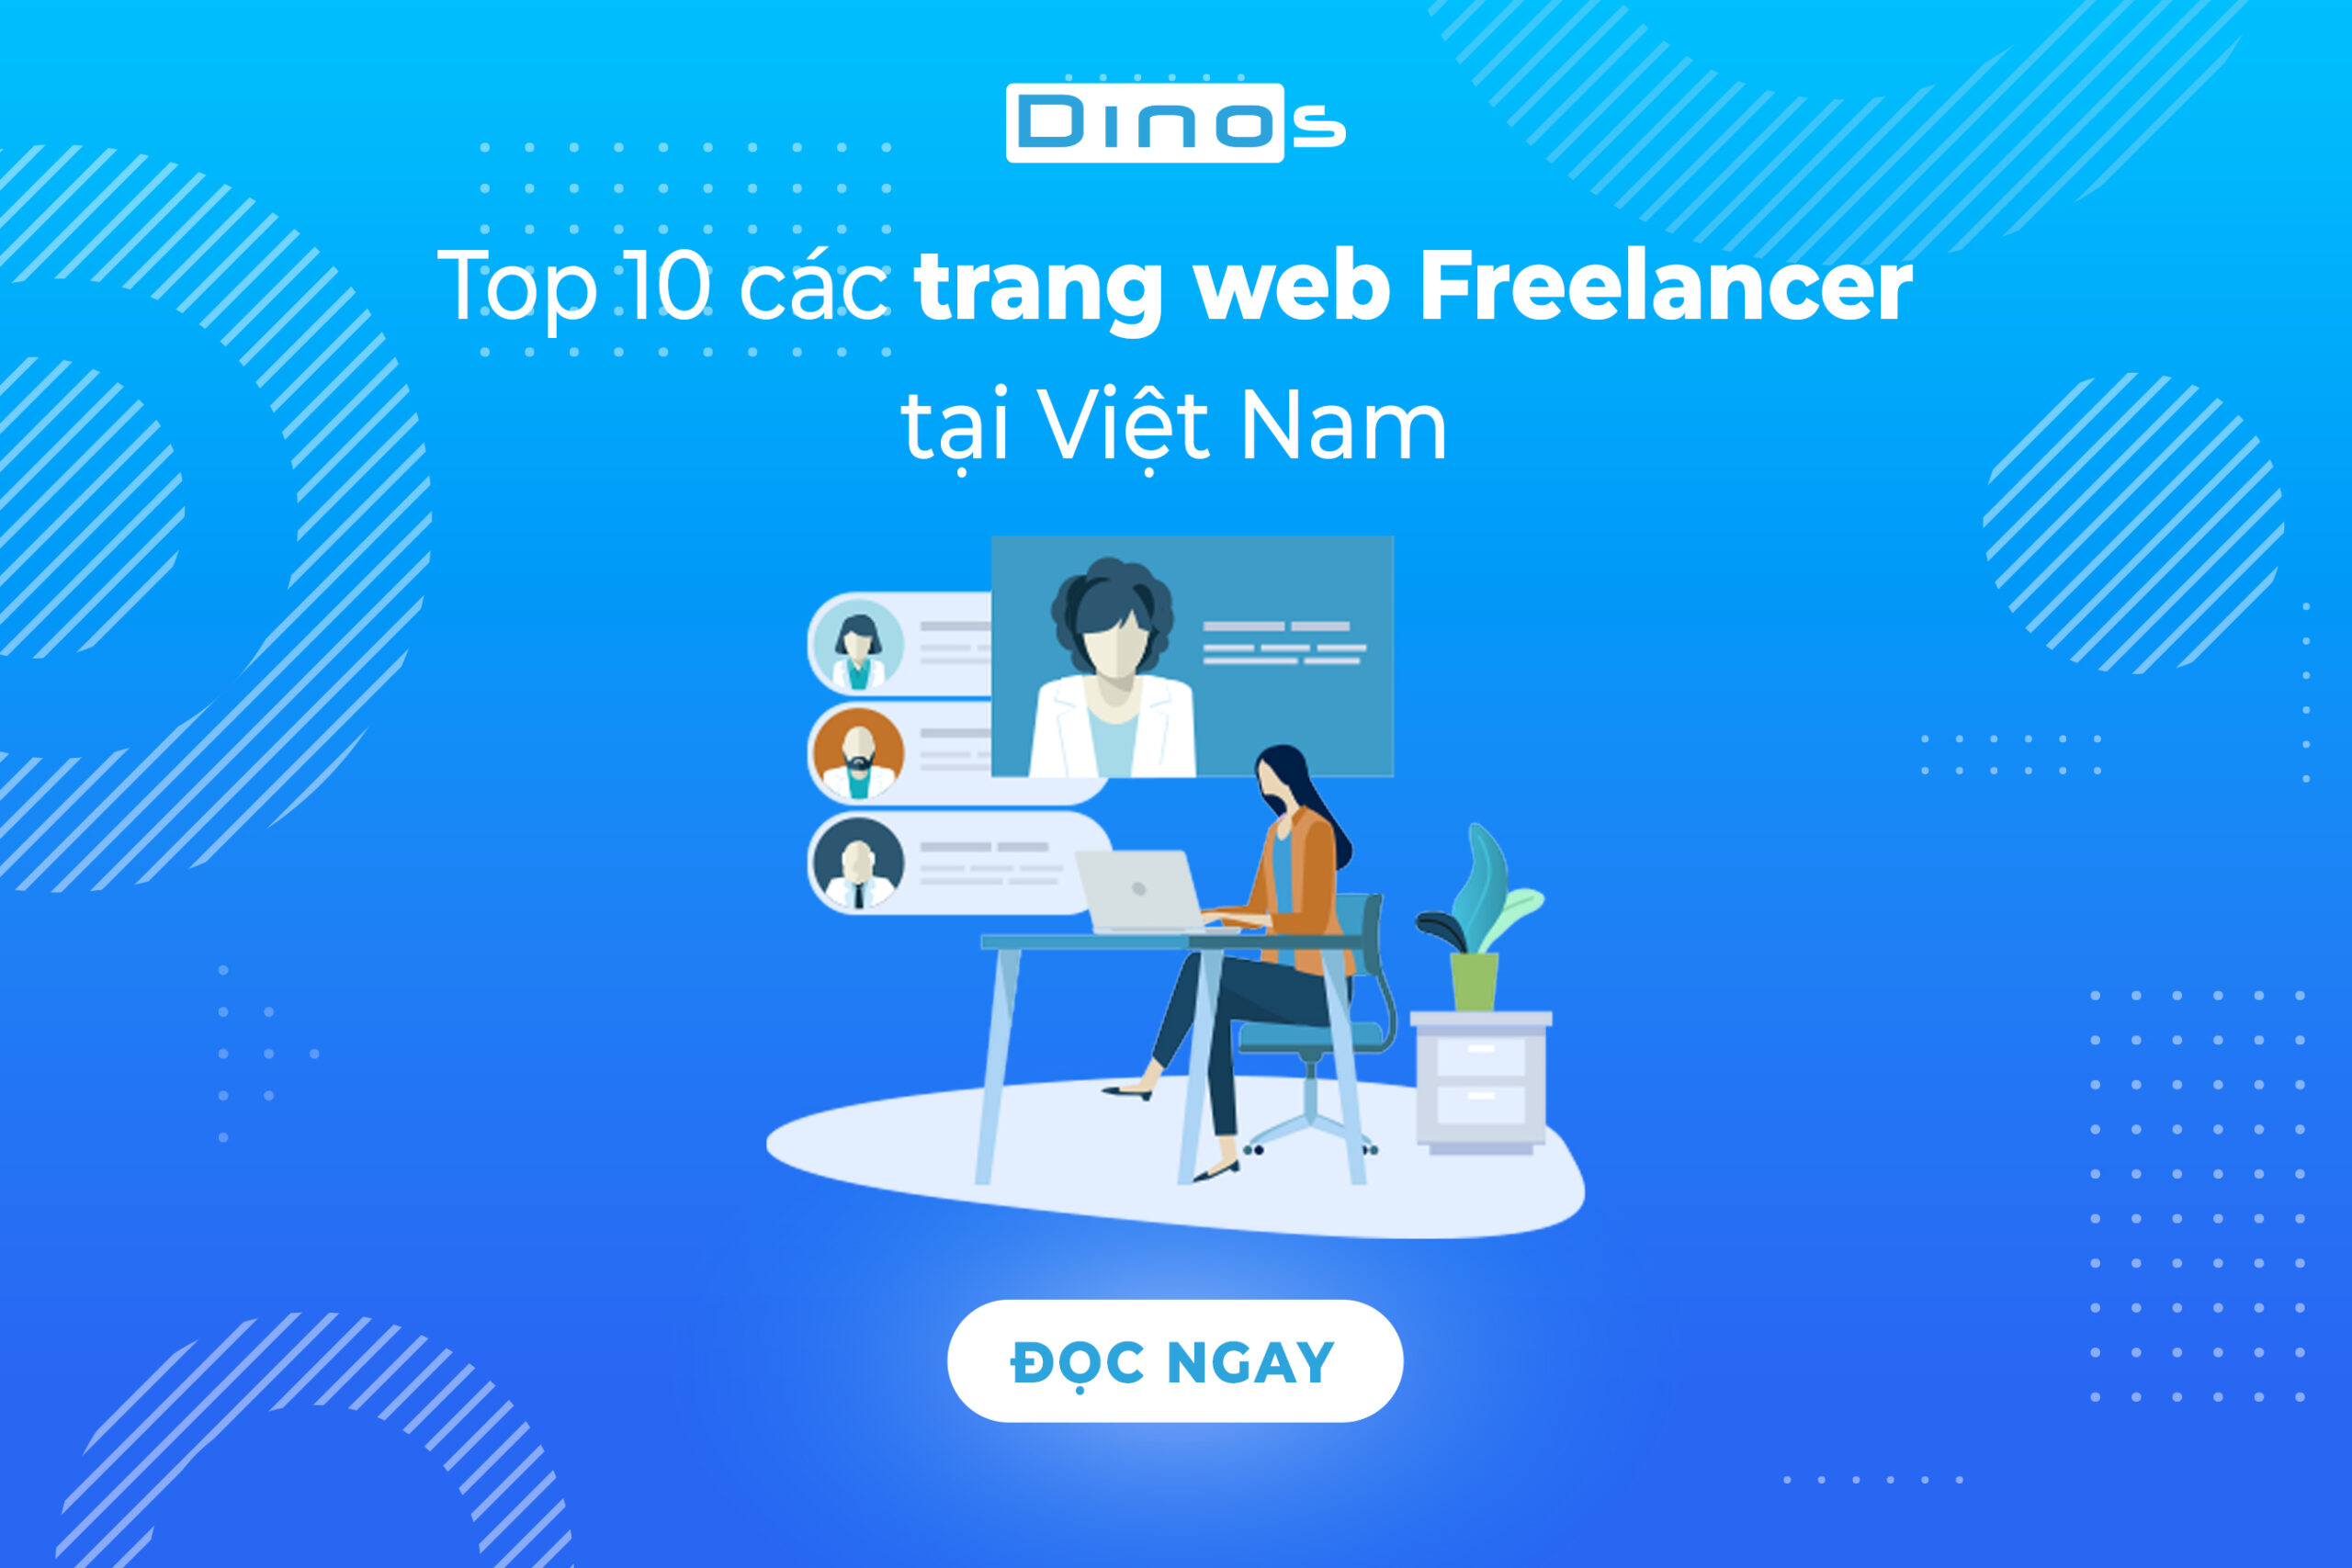 Top 10 các trang web freelancer tại Việt Nam